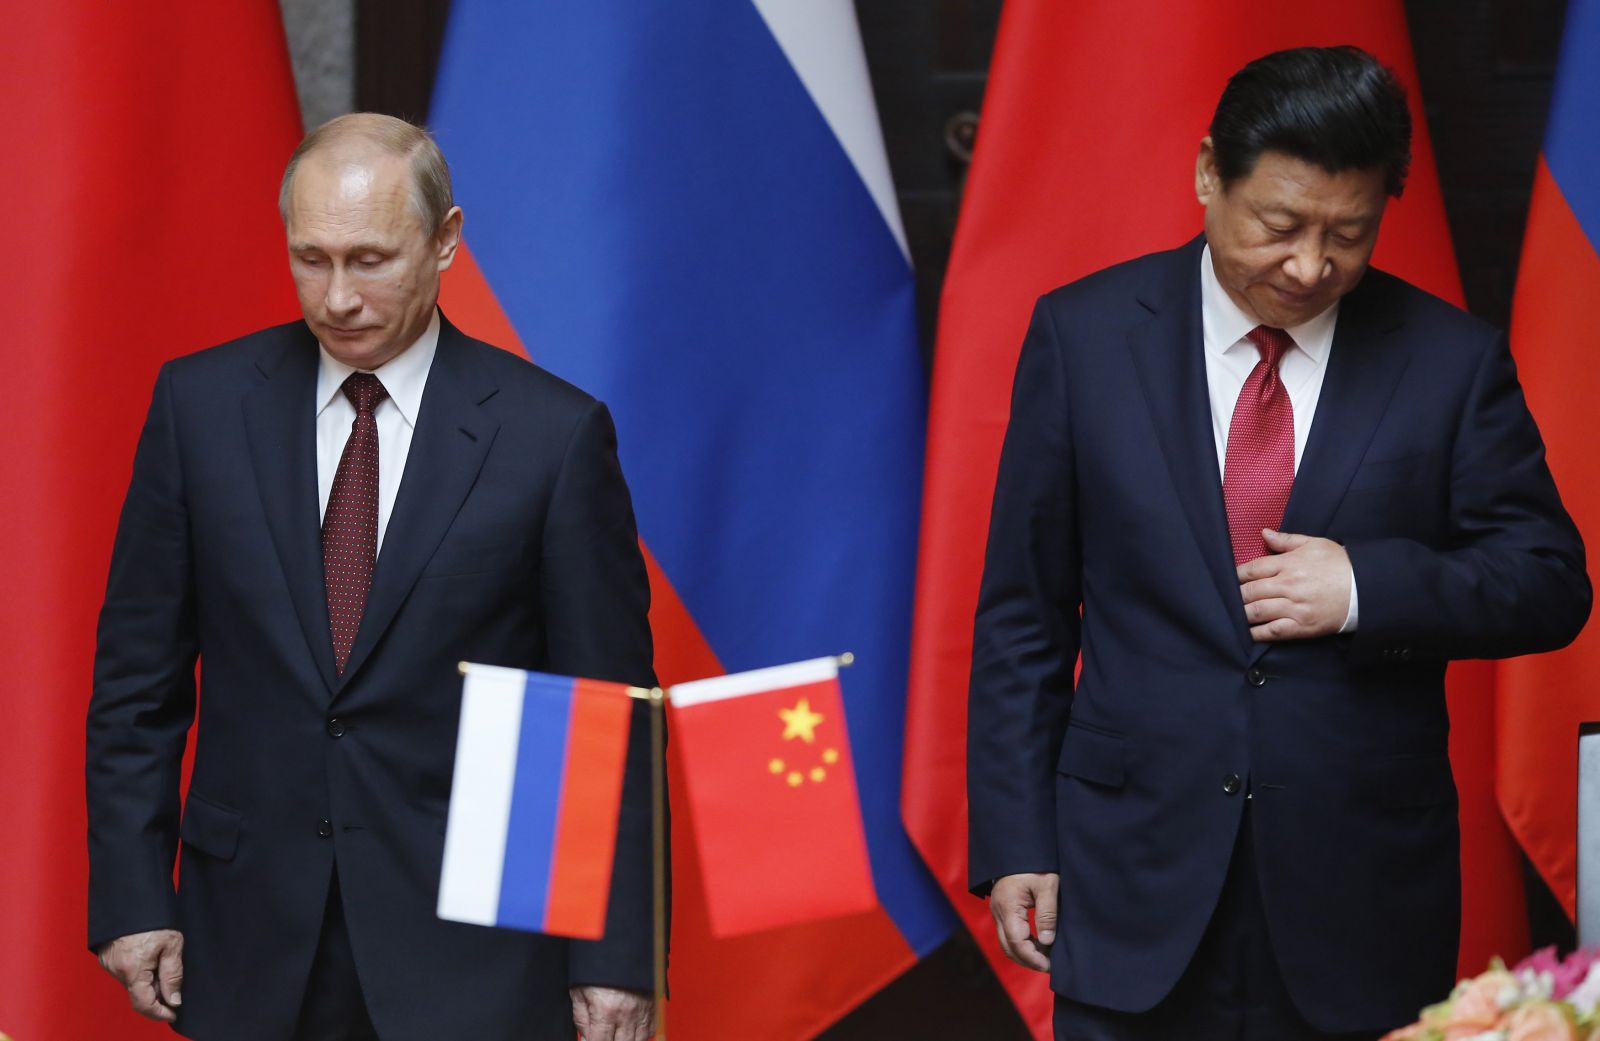 7 стран готовы вступить в коалицию против России и Китая - намечается грандиозное противодействие